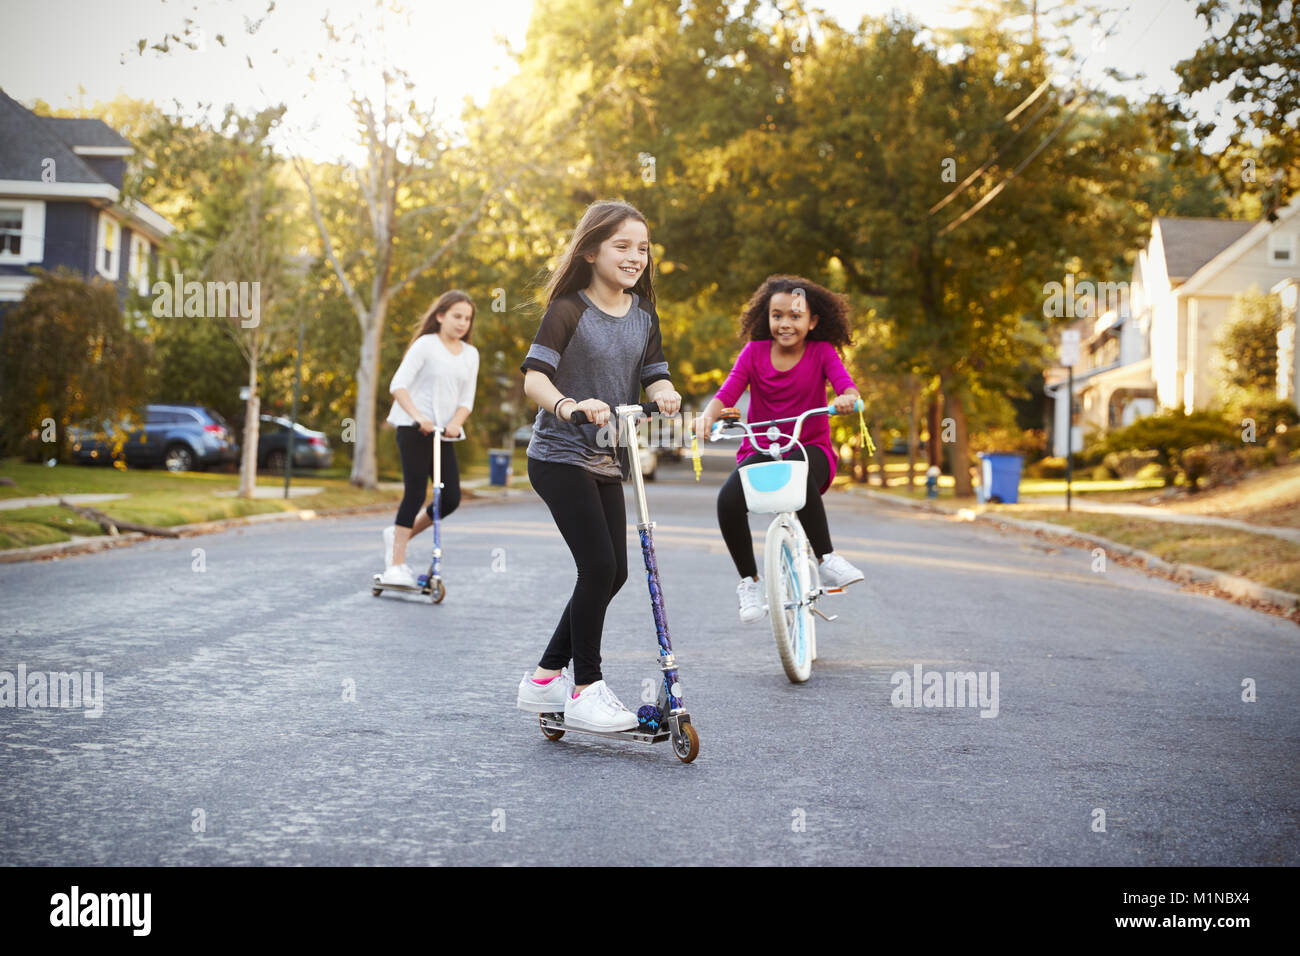 Le tre ragazze cavalcare giù lungo la strada a scooter e bici Foto Stock